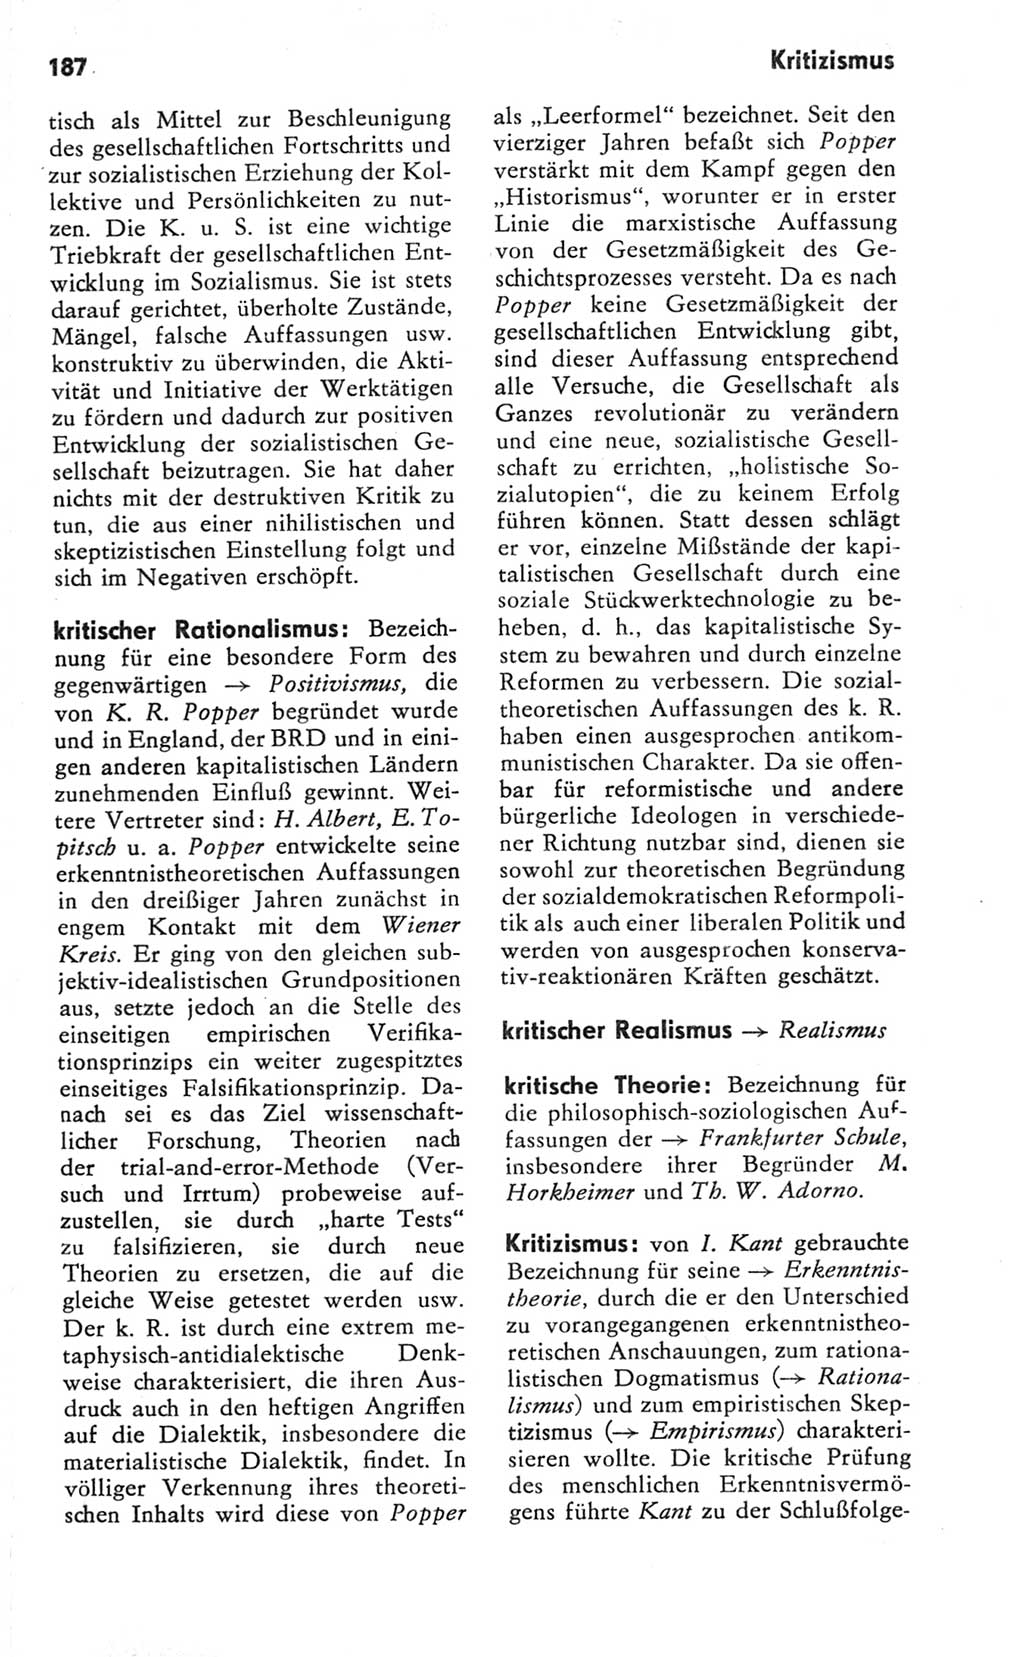 Kleines Wörterbuch der marxistisch-leninistischen Philosophie [Deutsche Demokratische Republik (DDR)] 1981, Seite 187 (Kl. Wb. ML Phil. DDR 1981, S. 187)